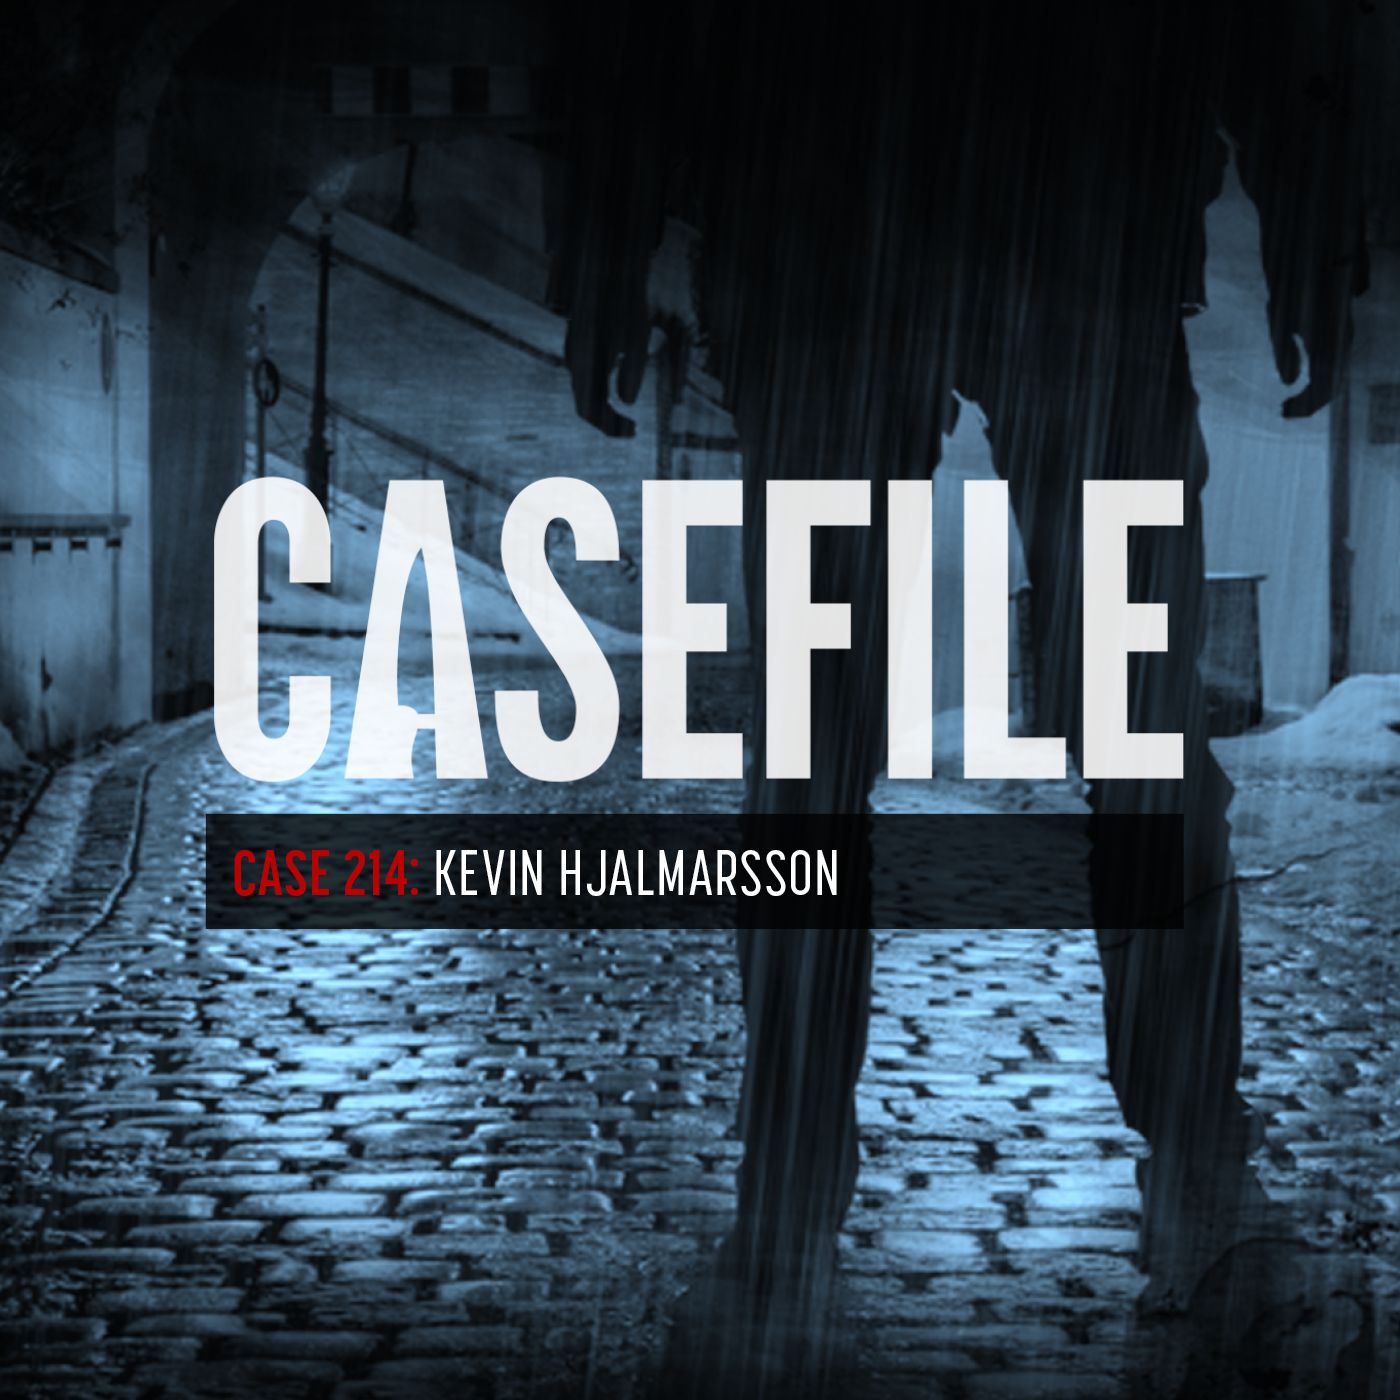 Case 214: Kevin Hjalmarsson